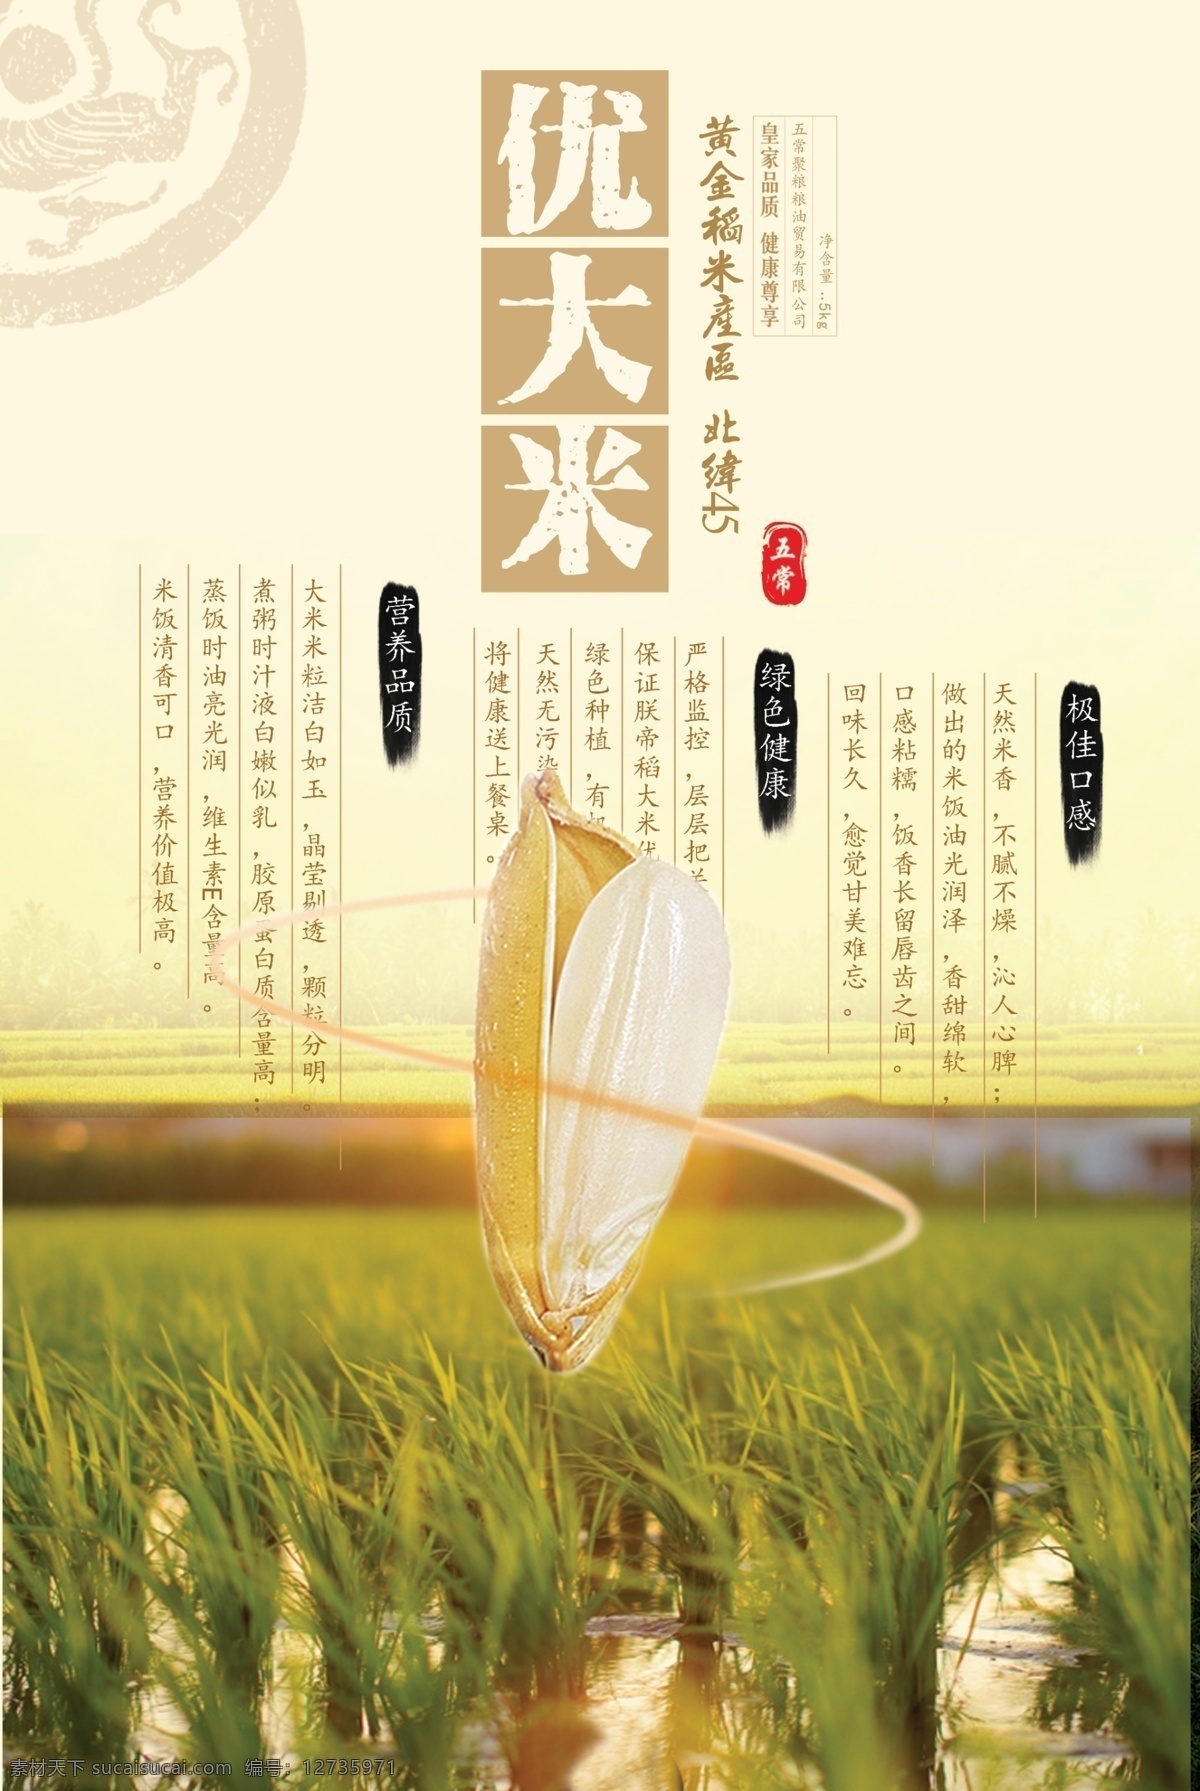 优质大米 优质 大米 东北 黄金 绿色 营养 健康 米粒 稻田 米香